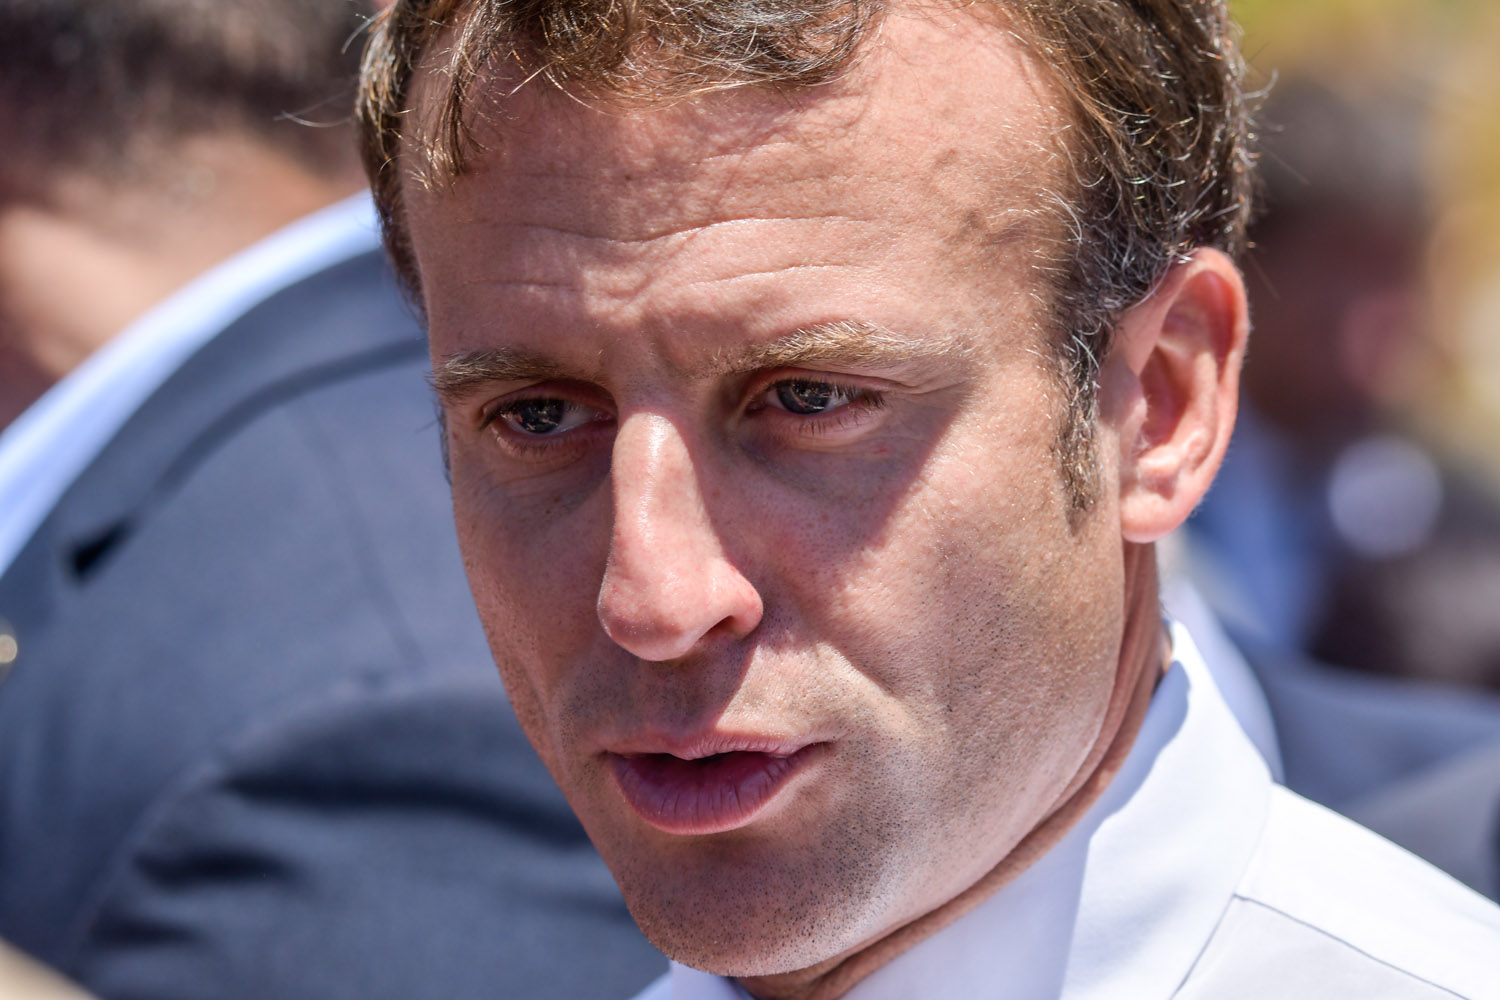 Retraites : La réforme sera menée "avec concertation" assure Emmanuel Macron